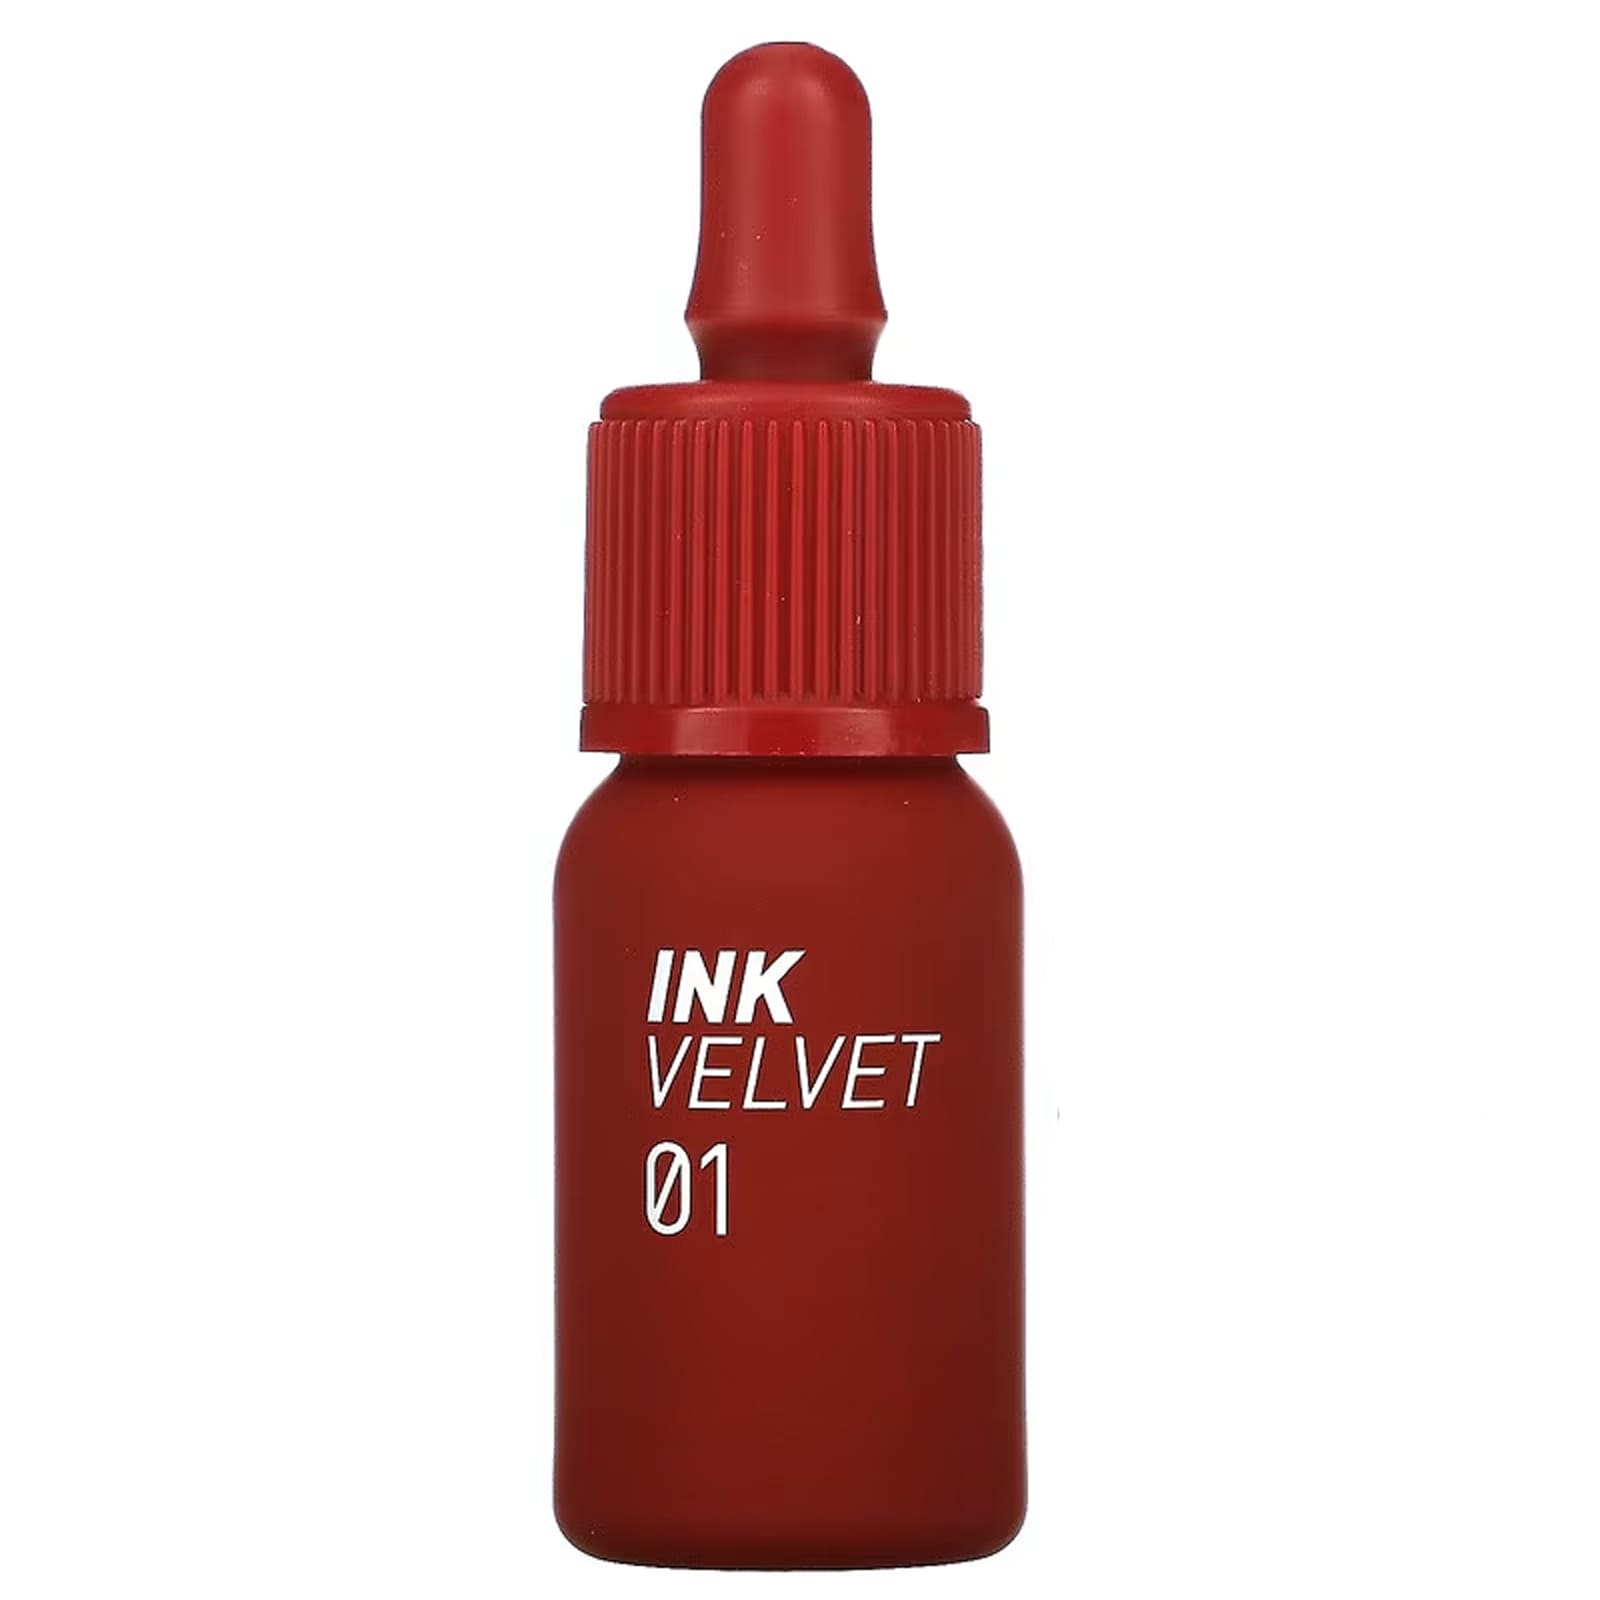 Тинт Peripera Ink Velvet для губ, 4 г peripera тинт для губ ink velvet 05 coralficial 4 г 0 14 унции